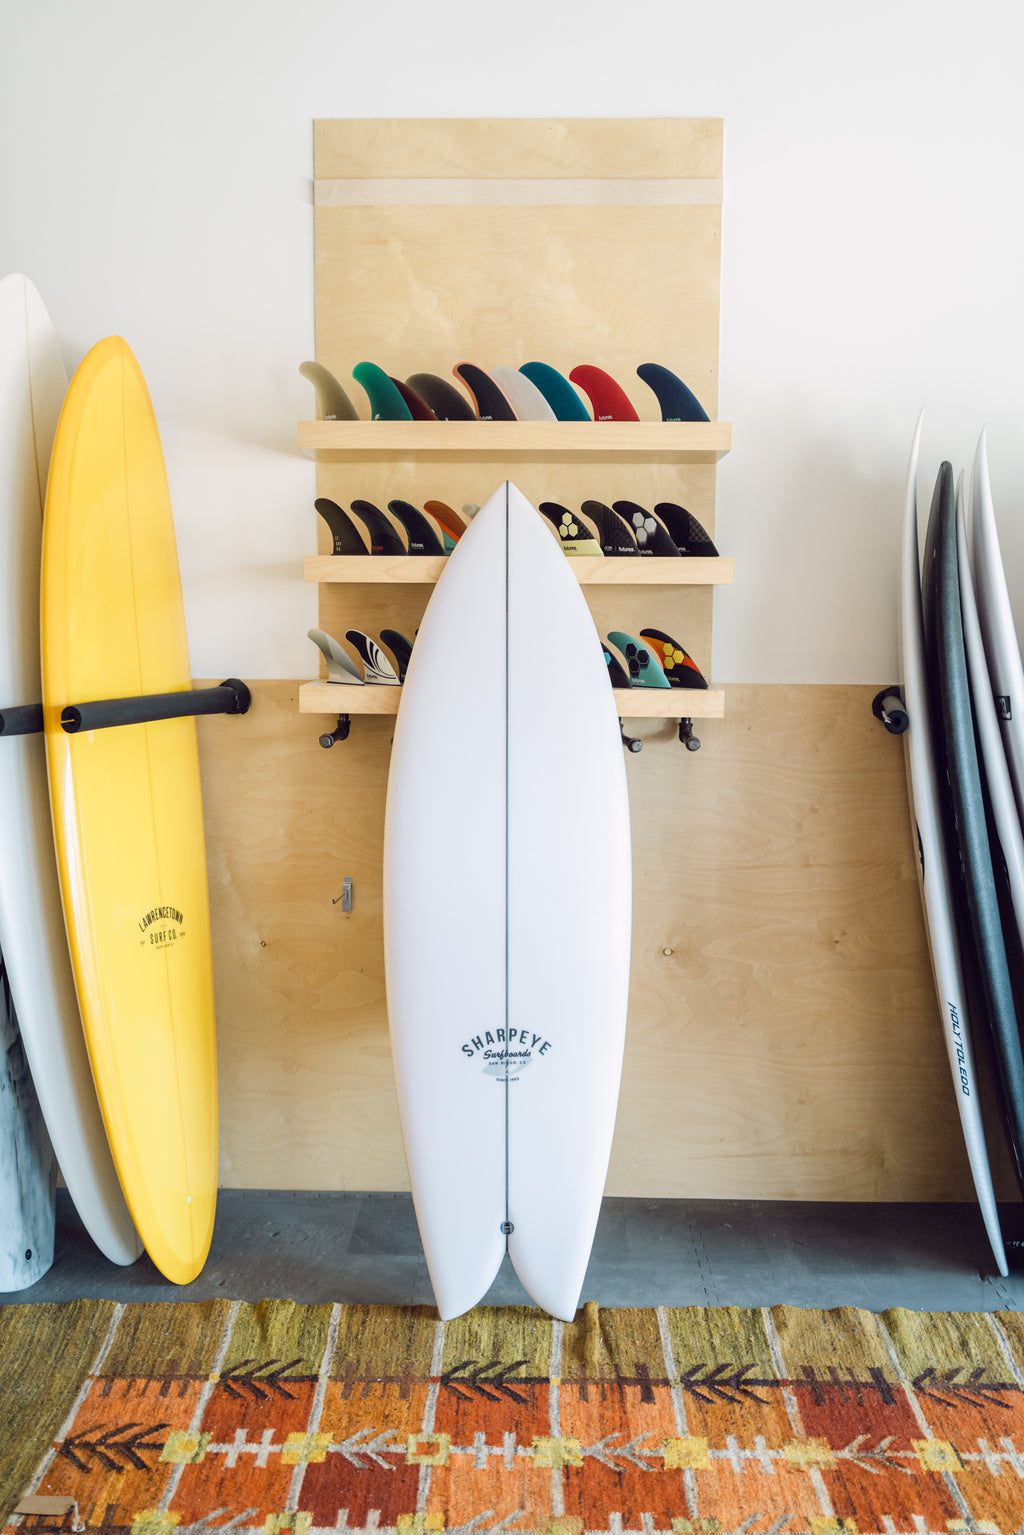 Sharp Eye Surfboards - Maguro Fish 6'0"